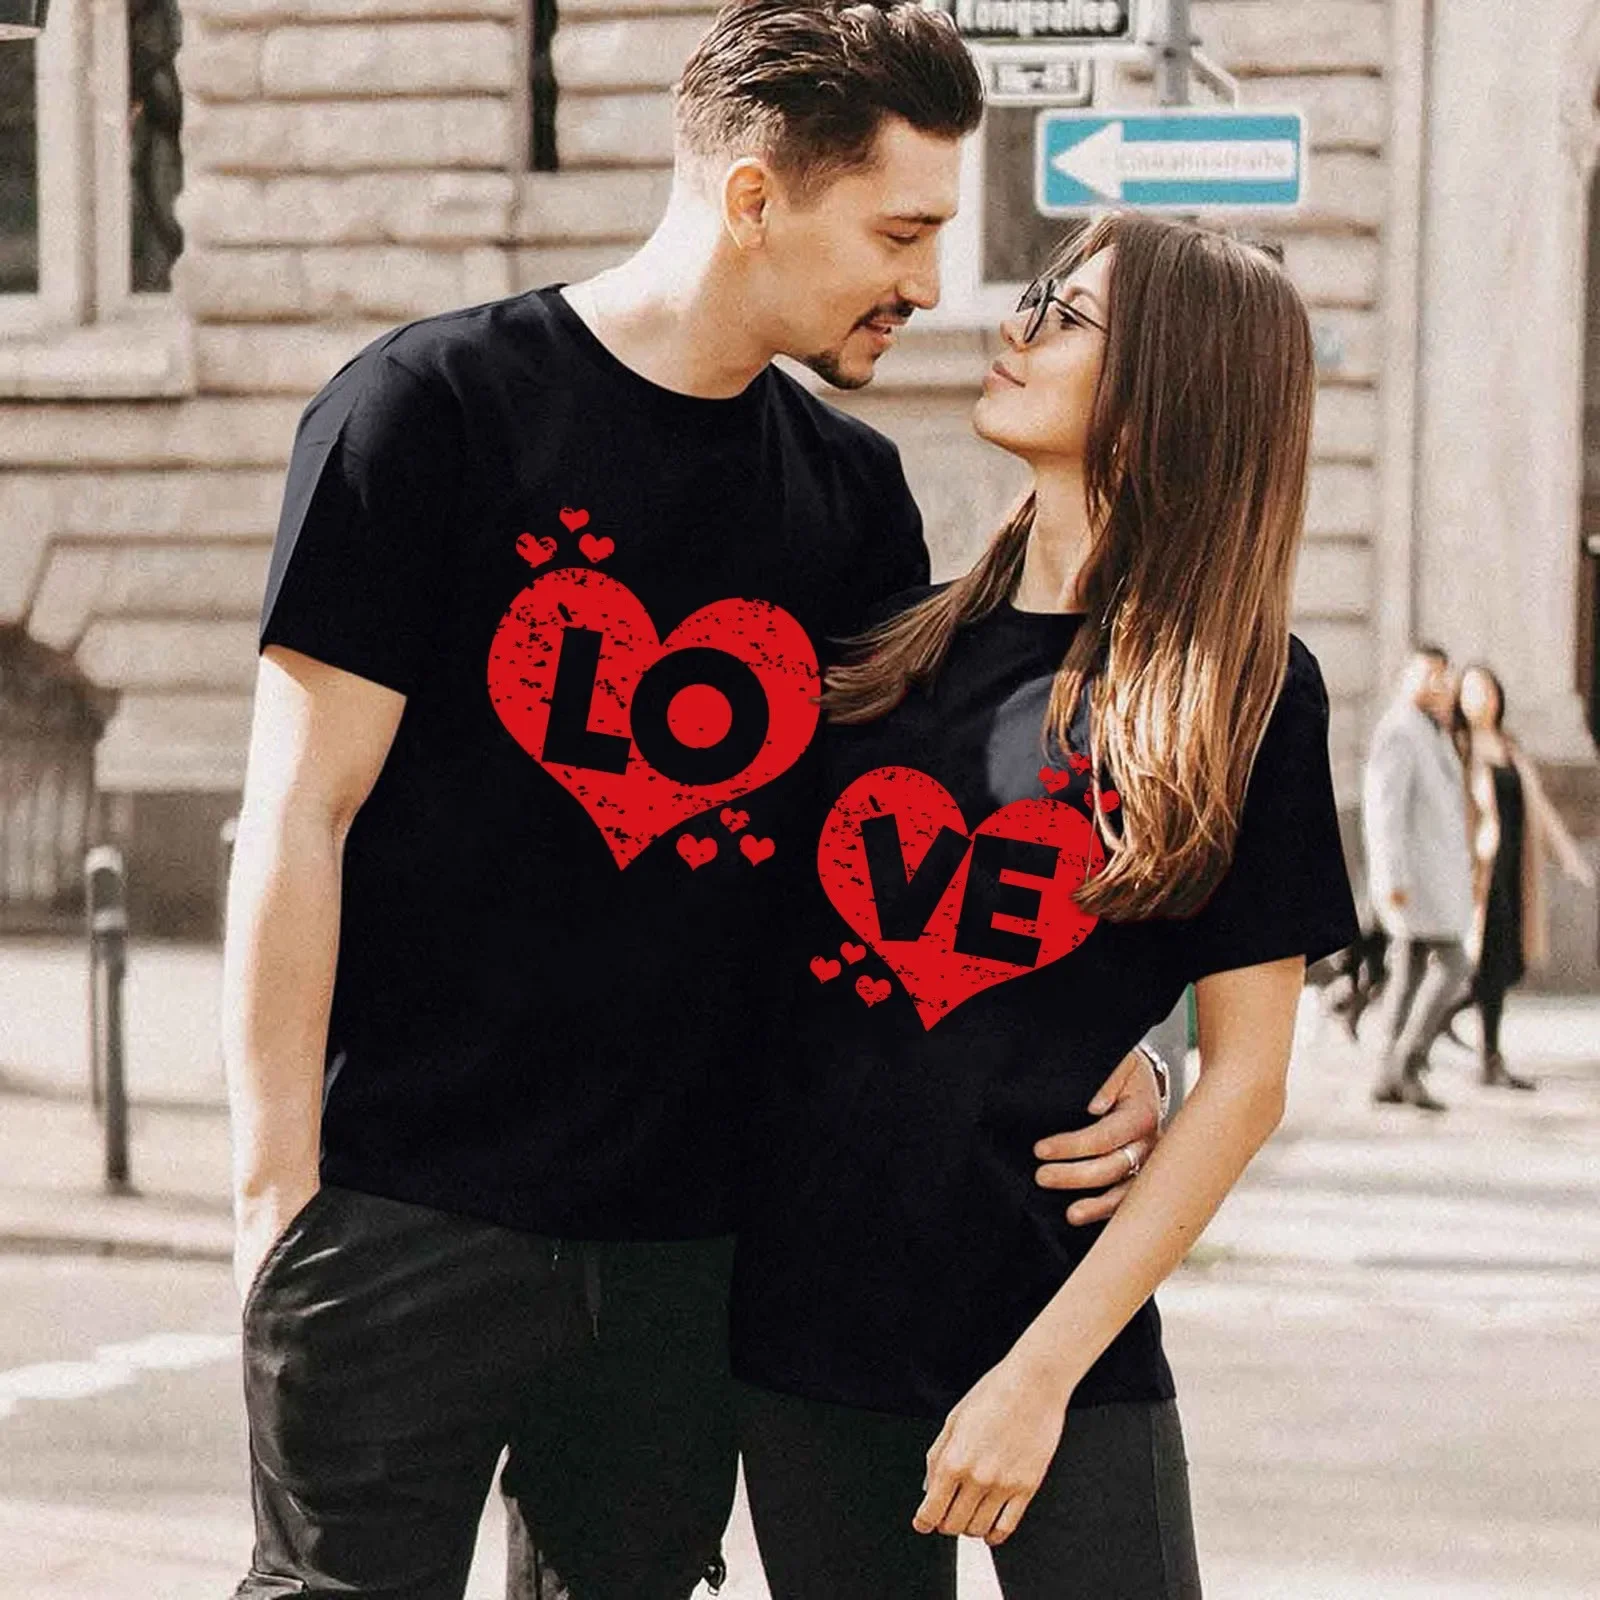 

Женская футболка для влюбленных, подходящая Повседневная футболка для милой пары, романтичная летняя футболка для пары, мужские хлопковые топы